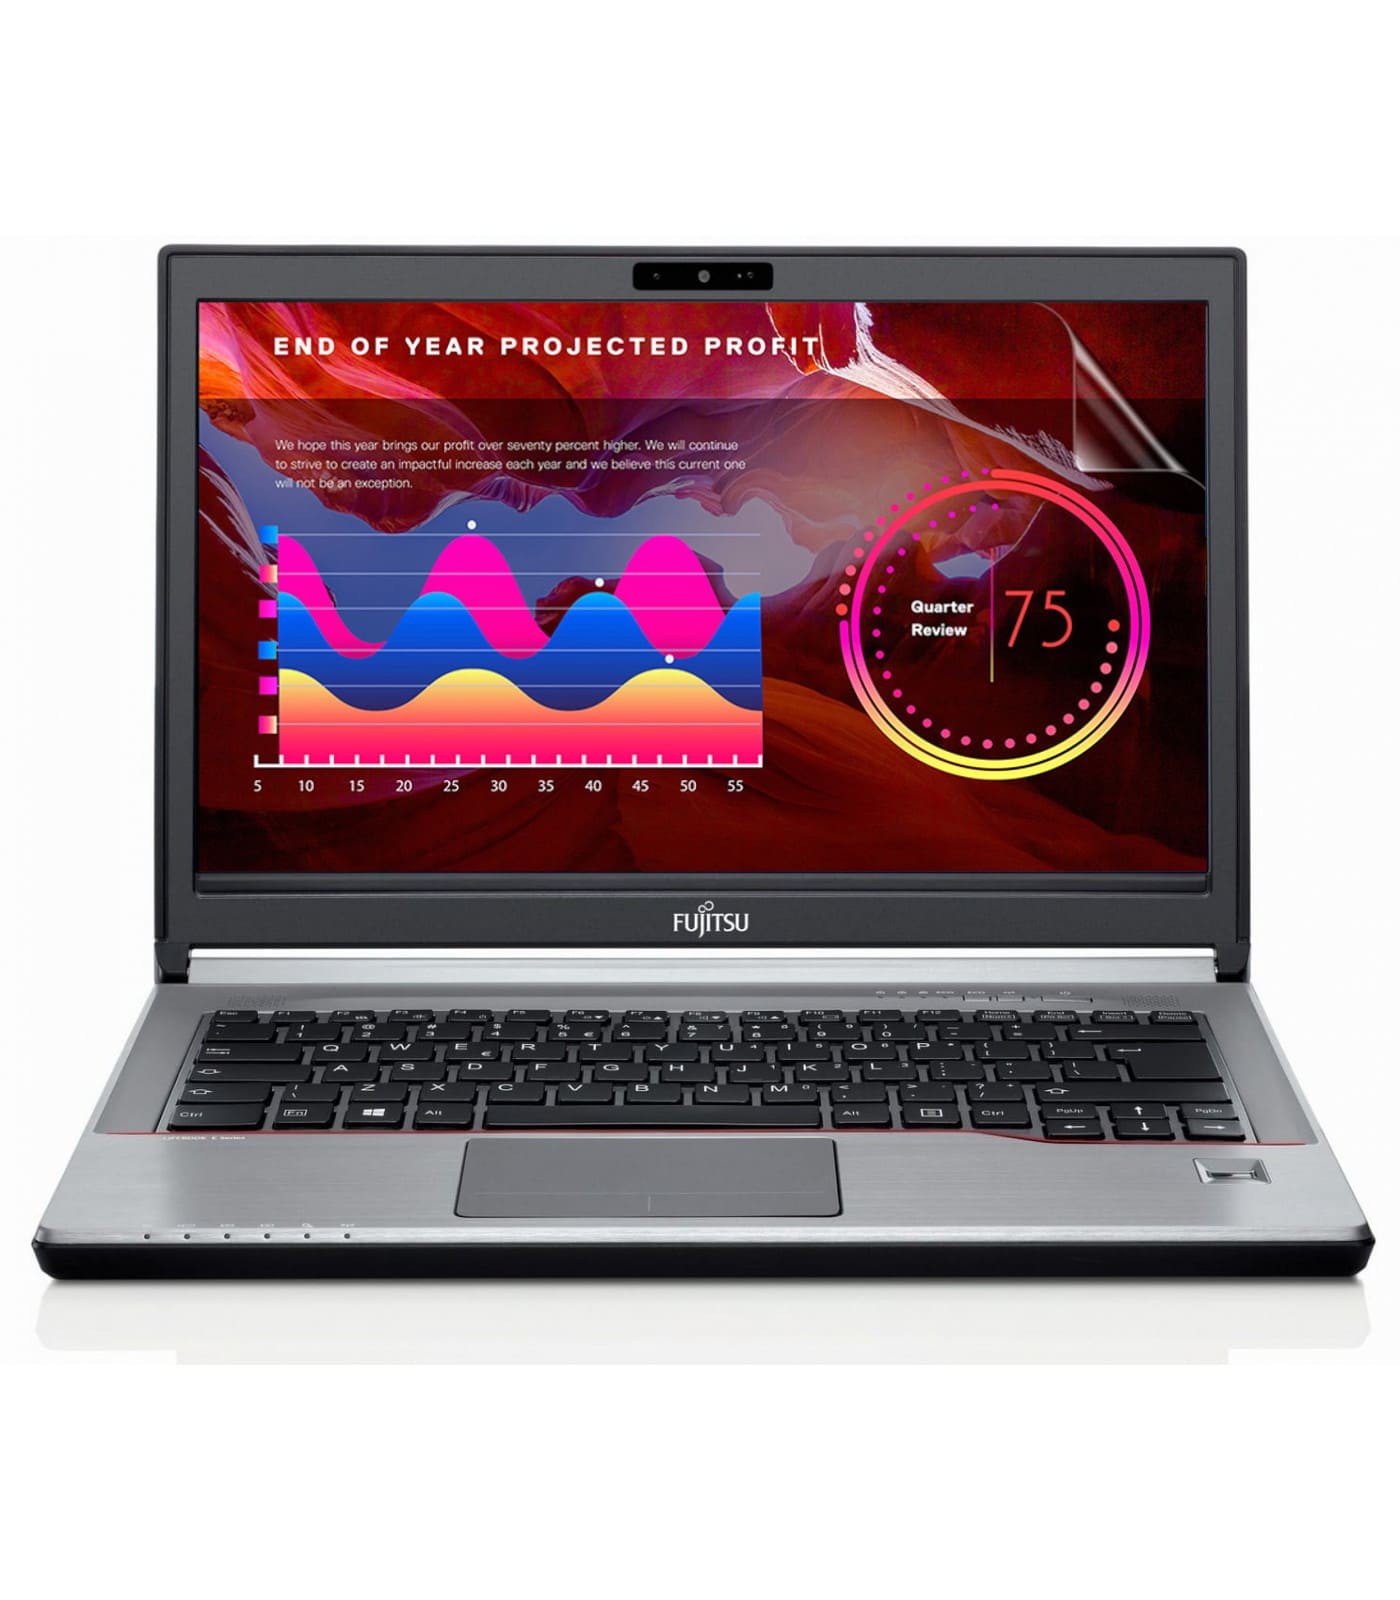 Poleasingowy laptop Fujitsu Lifebook E734 z procesorem i5 w klasie A-